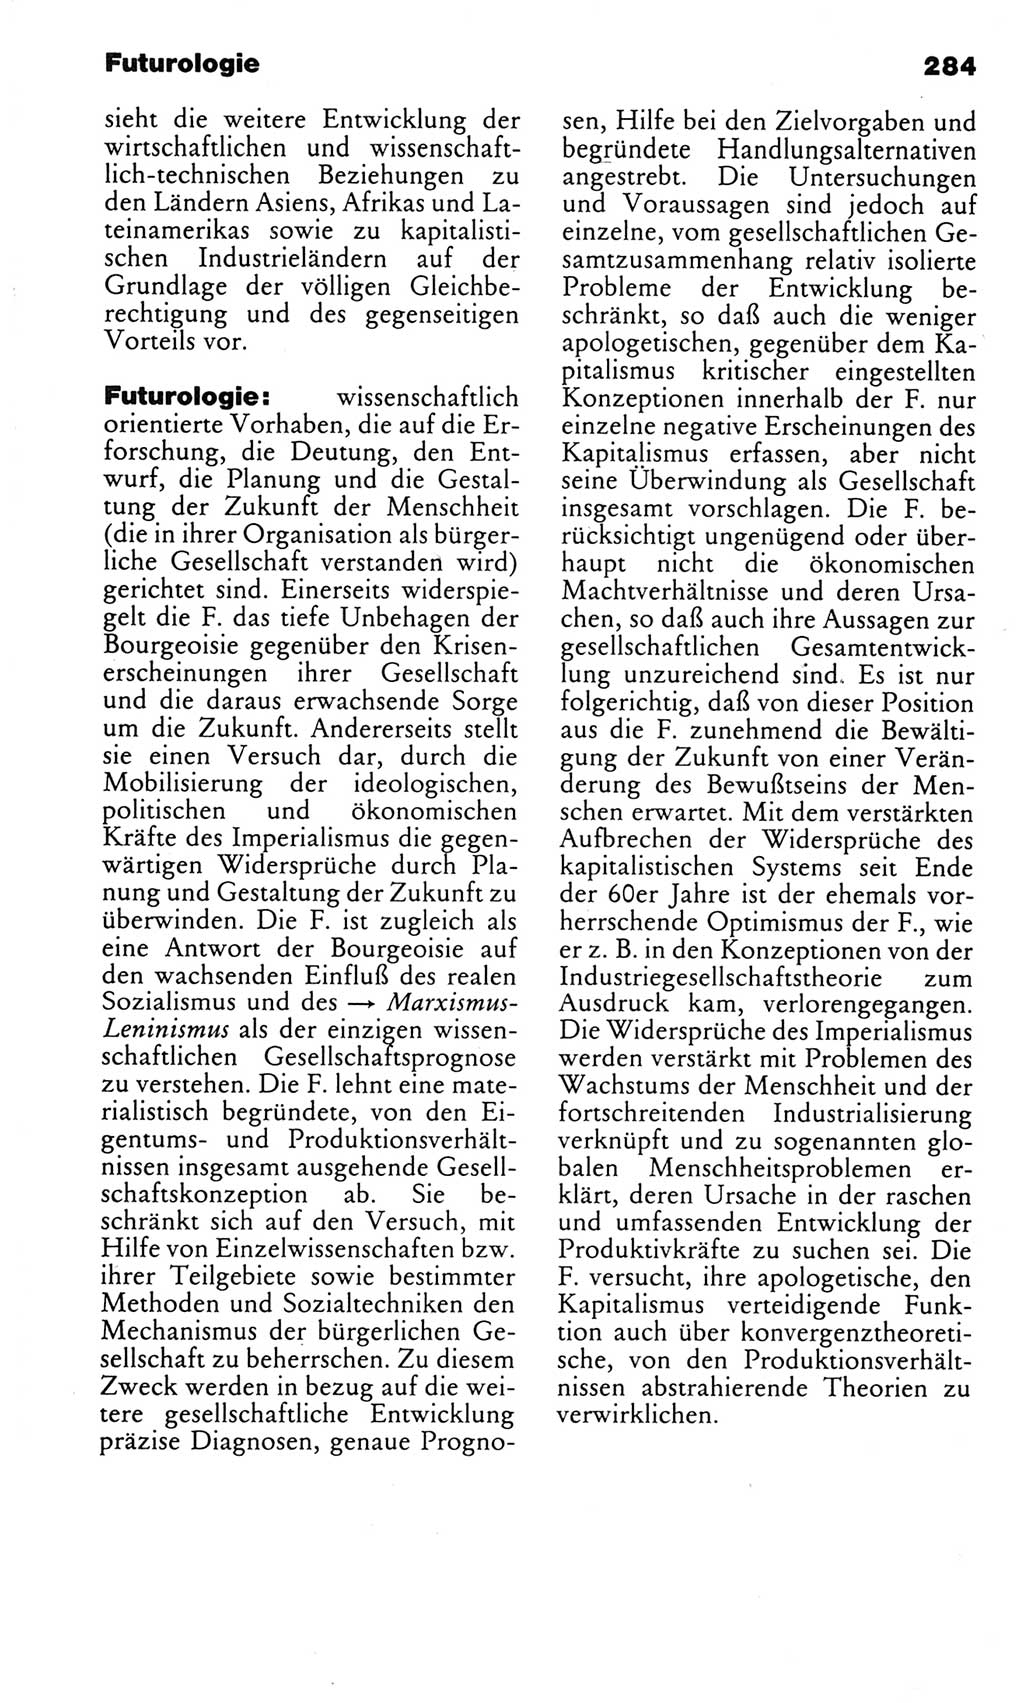 Kleines politisches Wörterbuch [Deutsche Demokratische Republik (DDR)] 1983, Seite 284 (Kl. pol. Wb. DDR 1983, S. 284)